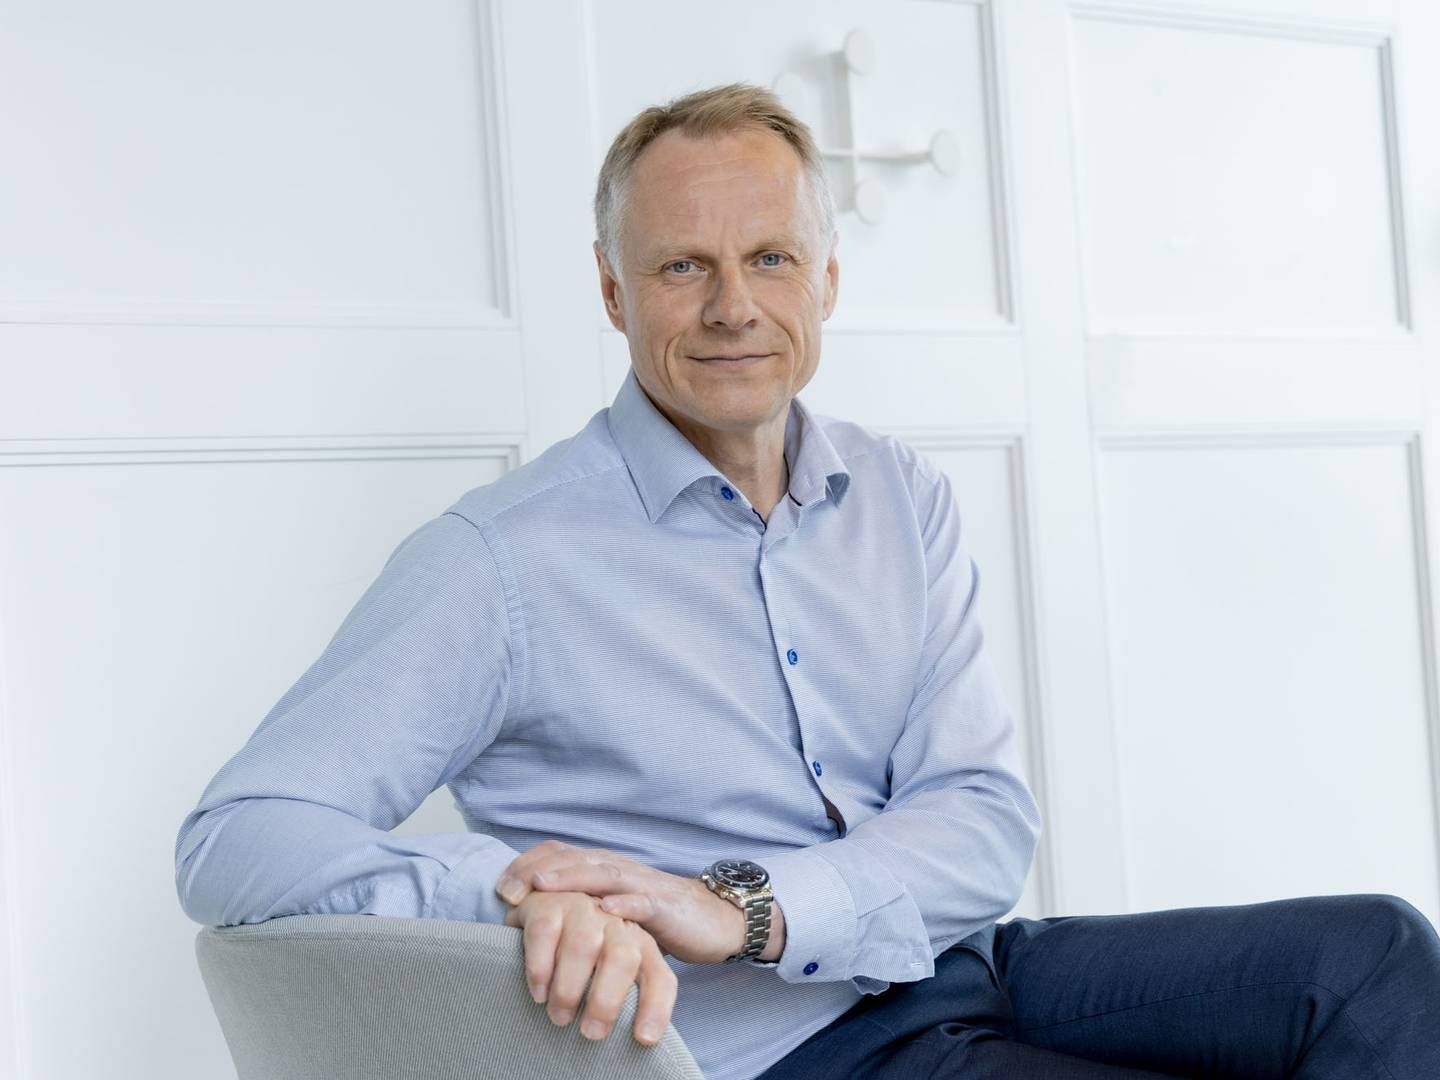 VIL VÆRE MED FRENDE GRUPPEN: Administrerende direktør i Tietoevry Banking, Klaus Andersen, vil hjelpe den nye Frende Gruppen. | Foto: Tietoevry